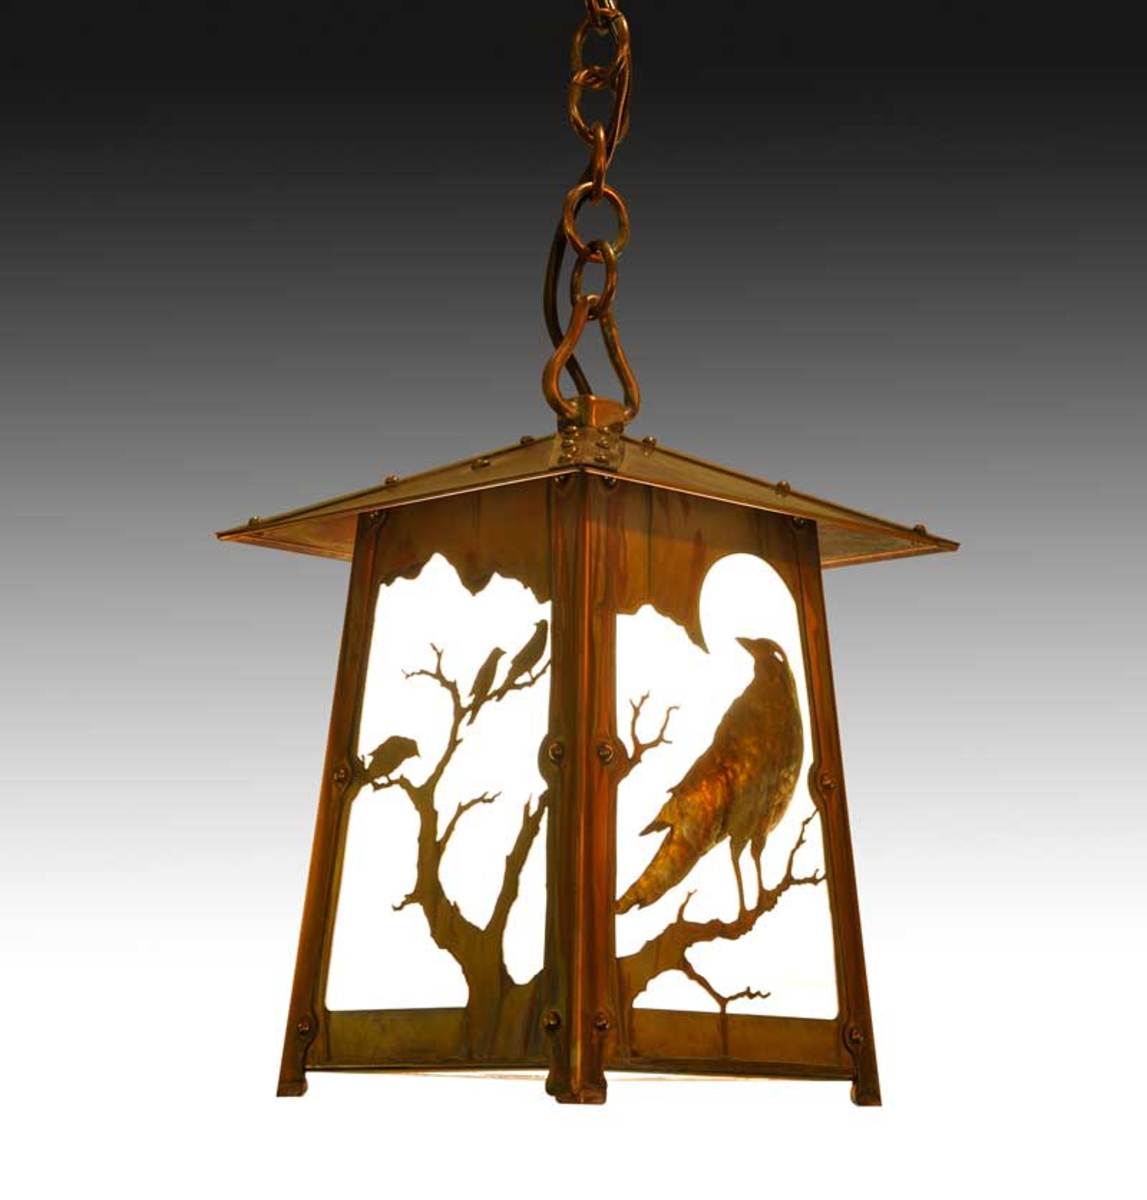 ‘Raven’ filigree lantern, Old California Lantern